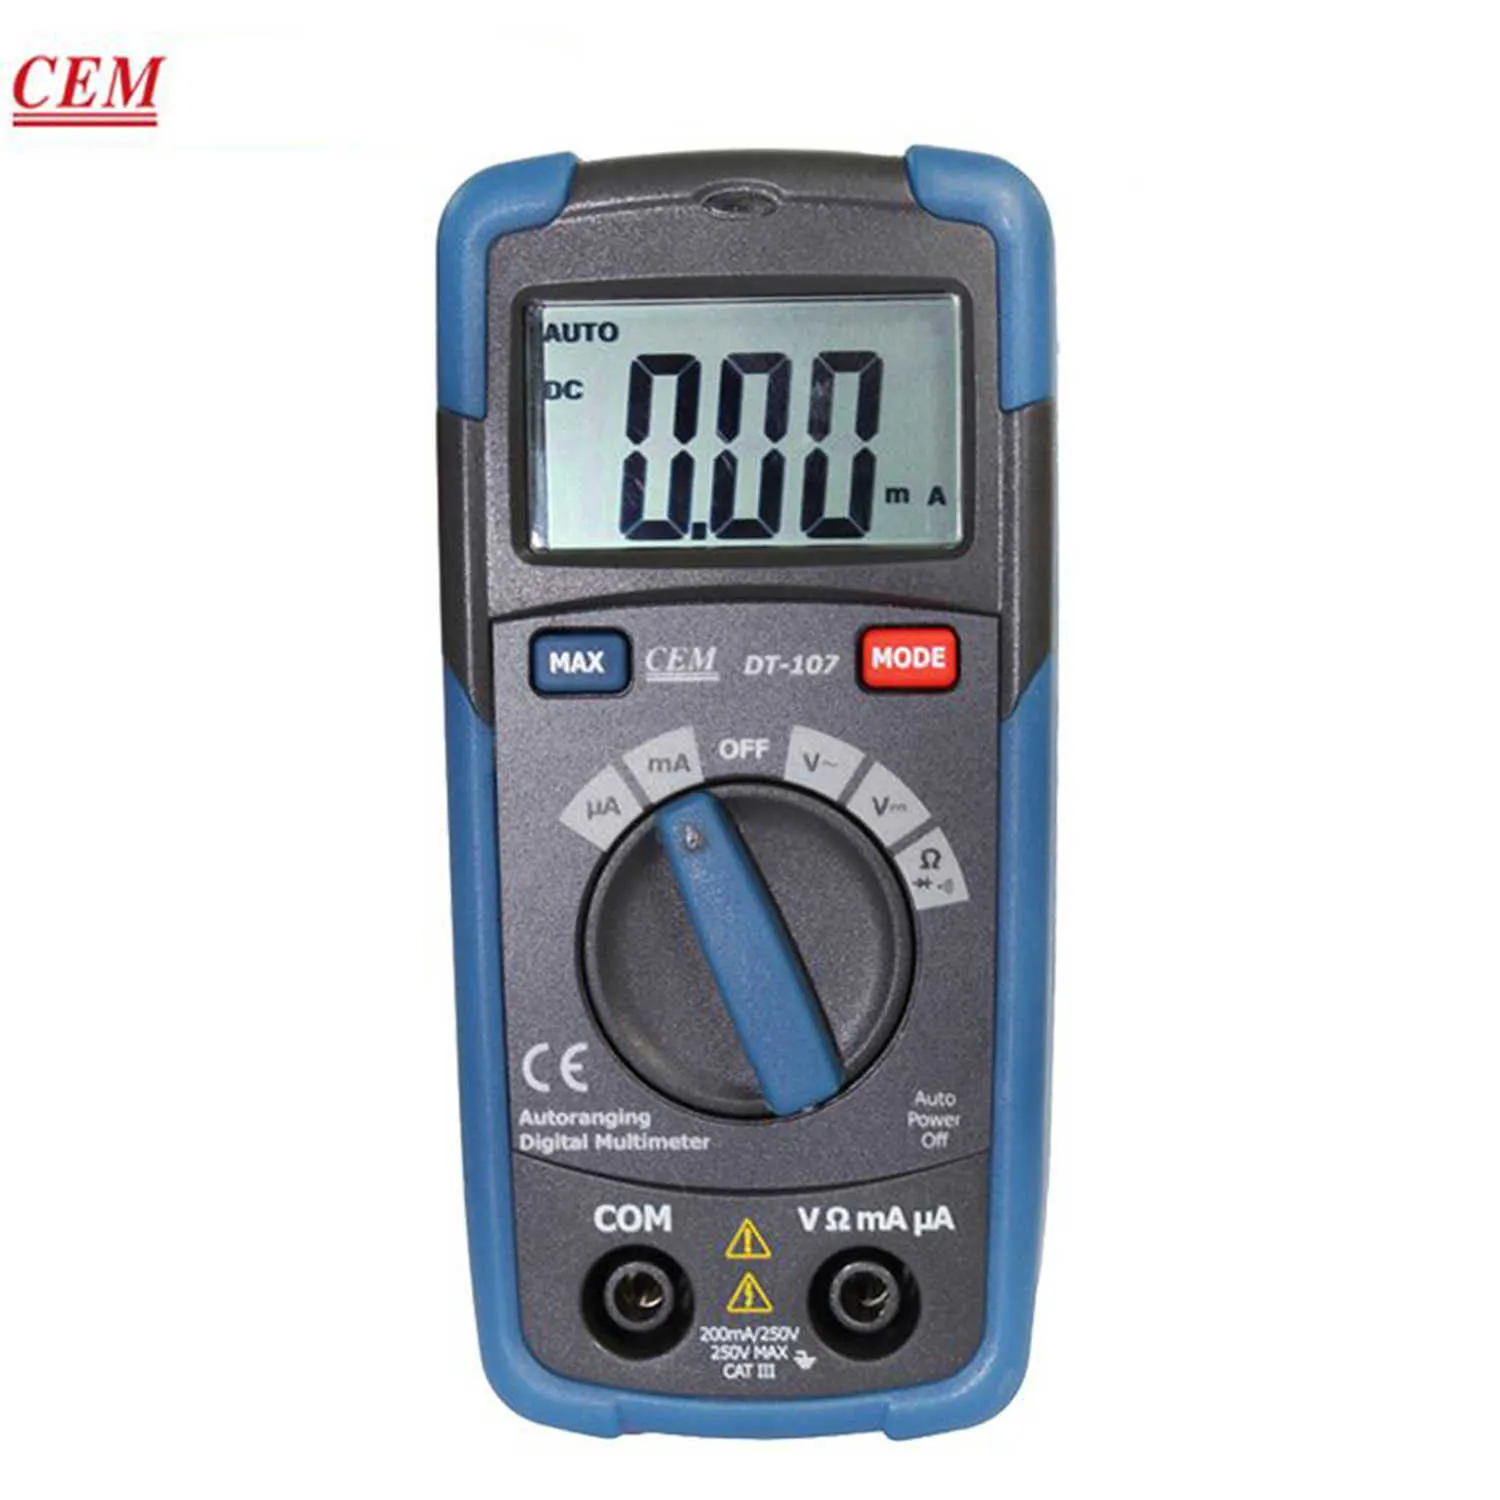 Le multimètre numérique de poche CEM DT-107 fournit une mesure automatique multifonctionnelle Type de testeur électronique 3 en 1 Type de poche à protection complète.